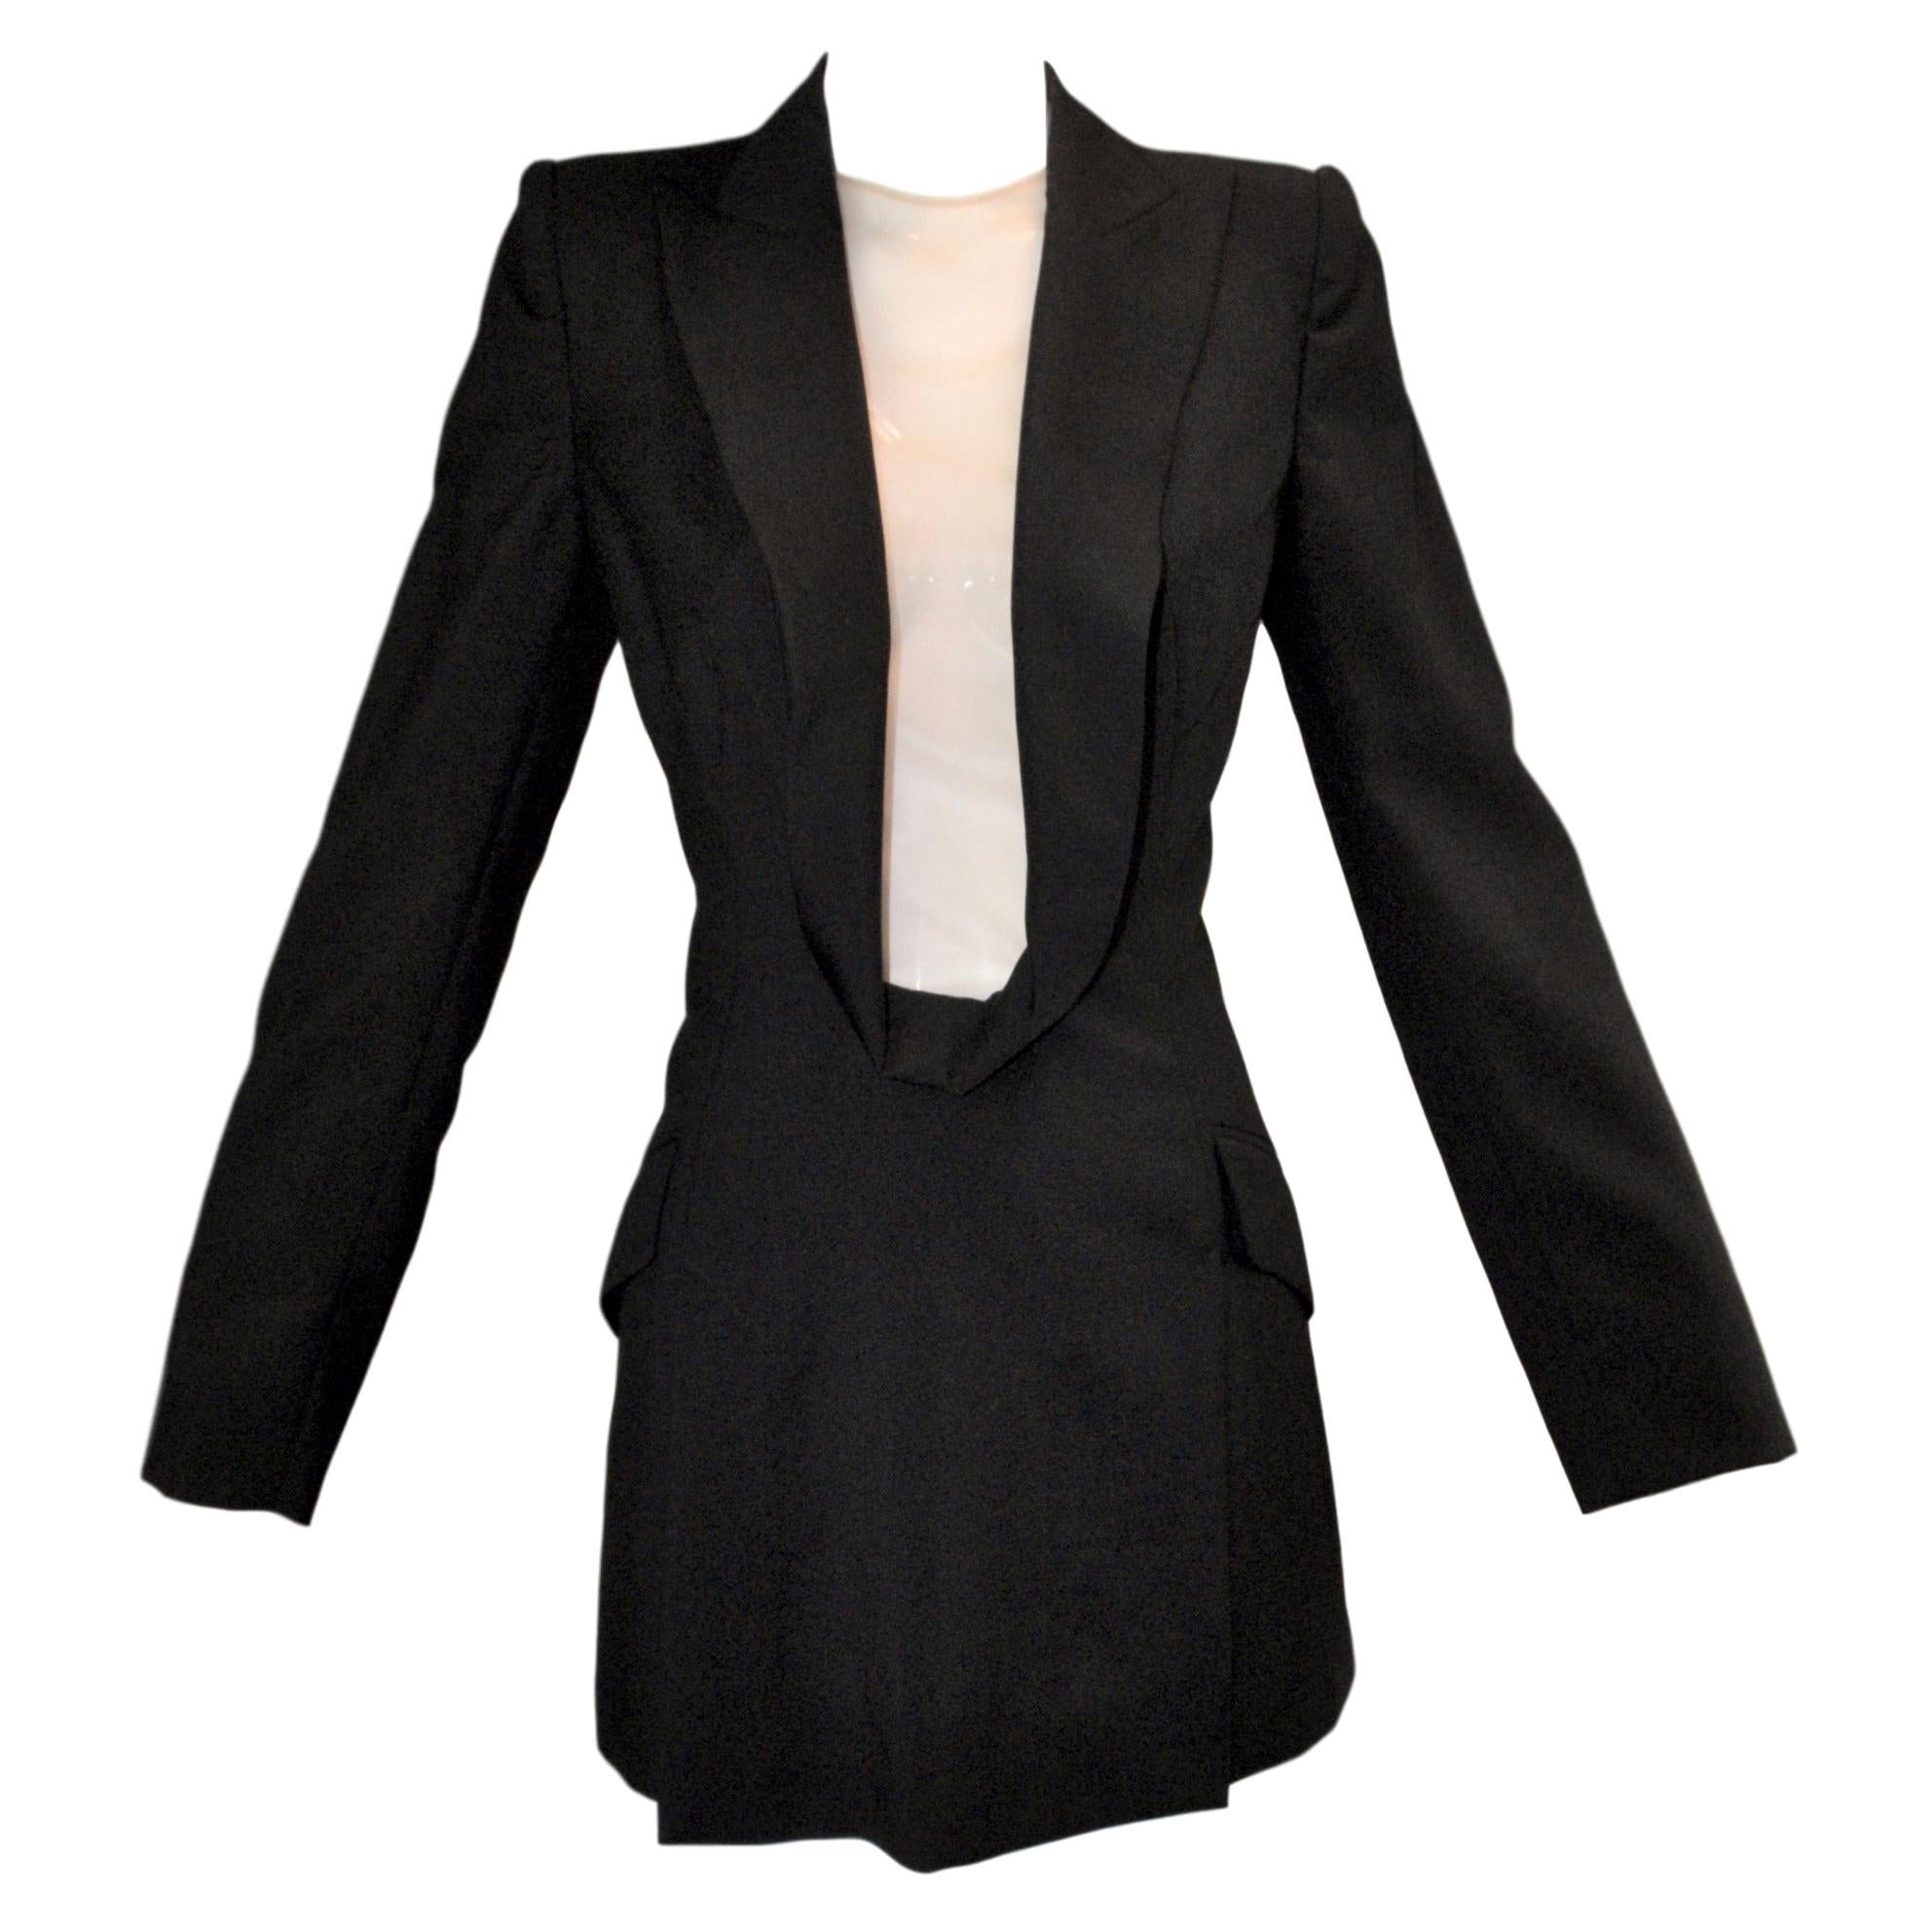 tuxedo dresses for sale